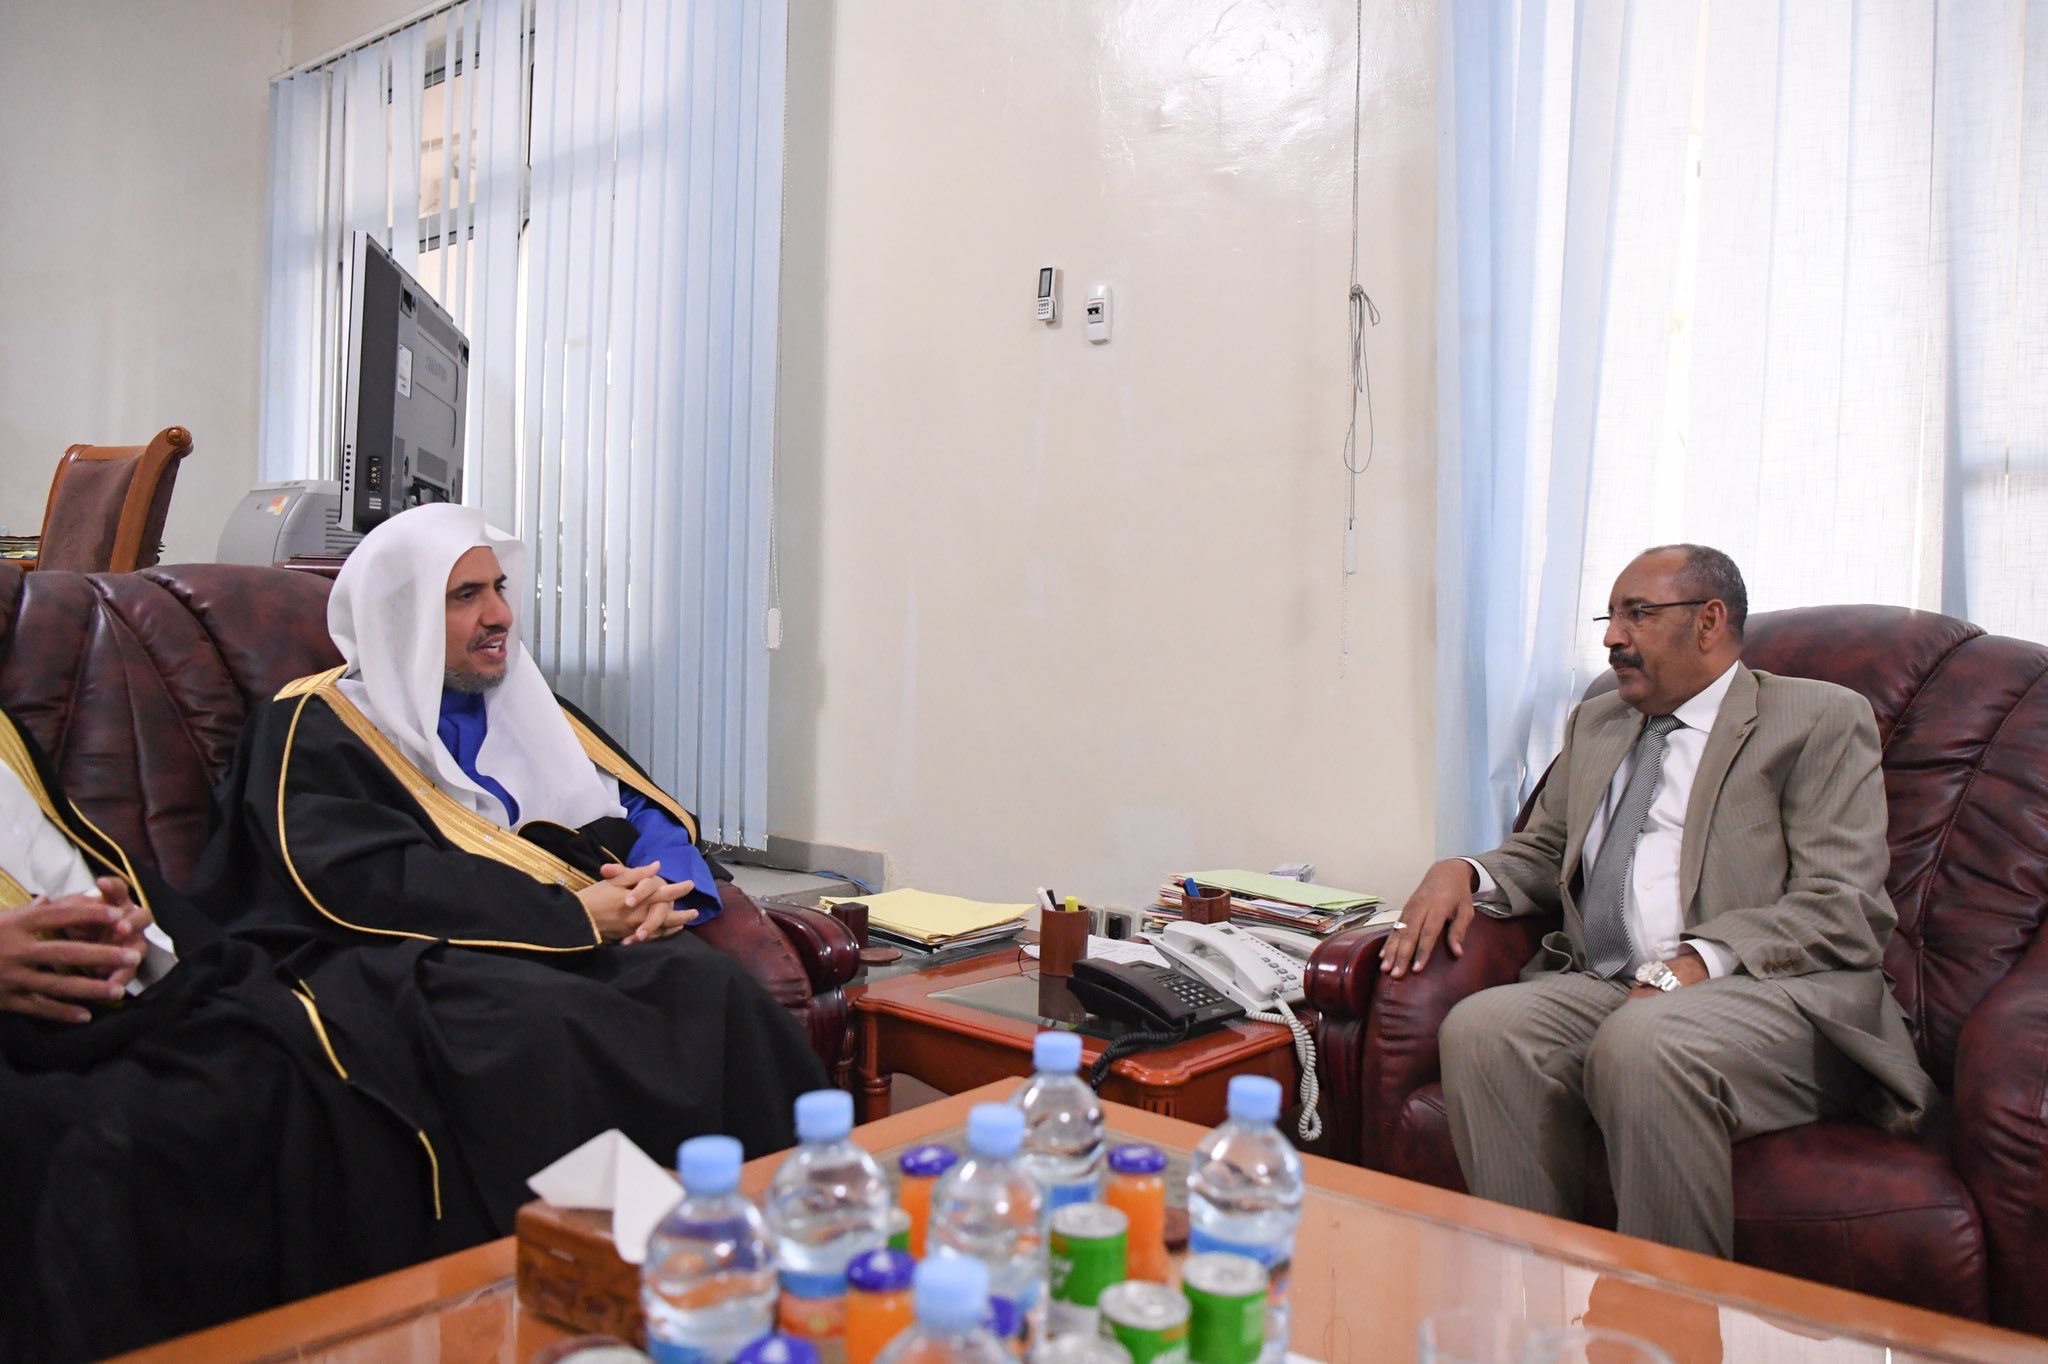 ‏وزير الداخلية الموريتاني السيد أحمد بن عبدالله يستقبل معالي أمين عام رابطة العالم الإسلامي‬⁩ في العاصمة نواكشوط، وجرى خلال اللقاء استعراض عدد من الموضوعات ذات الاهتمام المشترك.